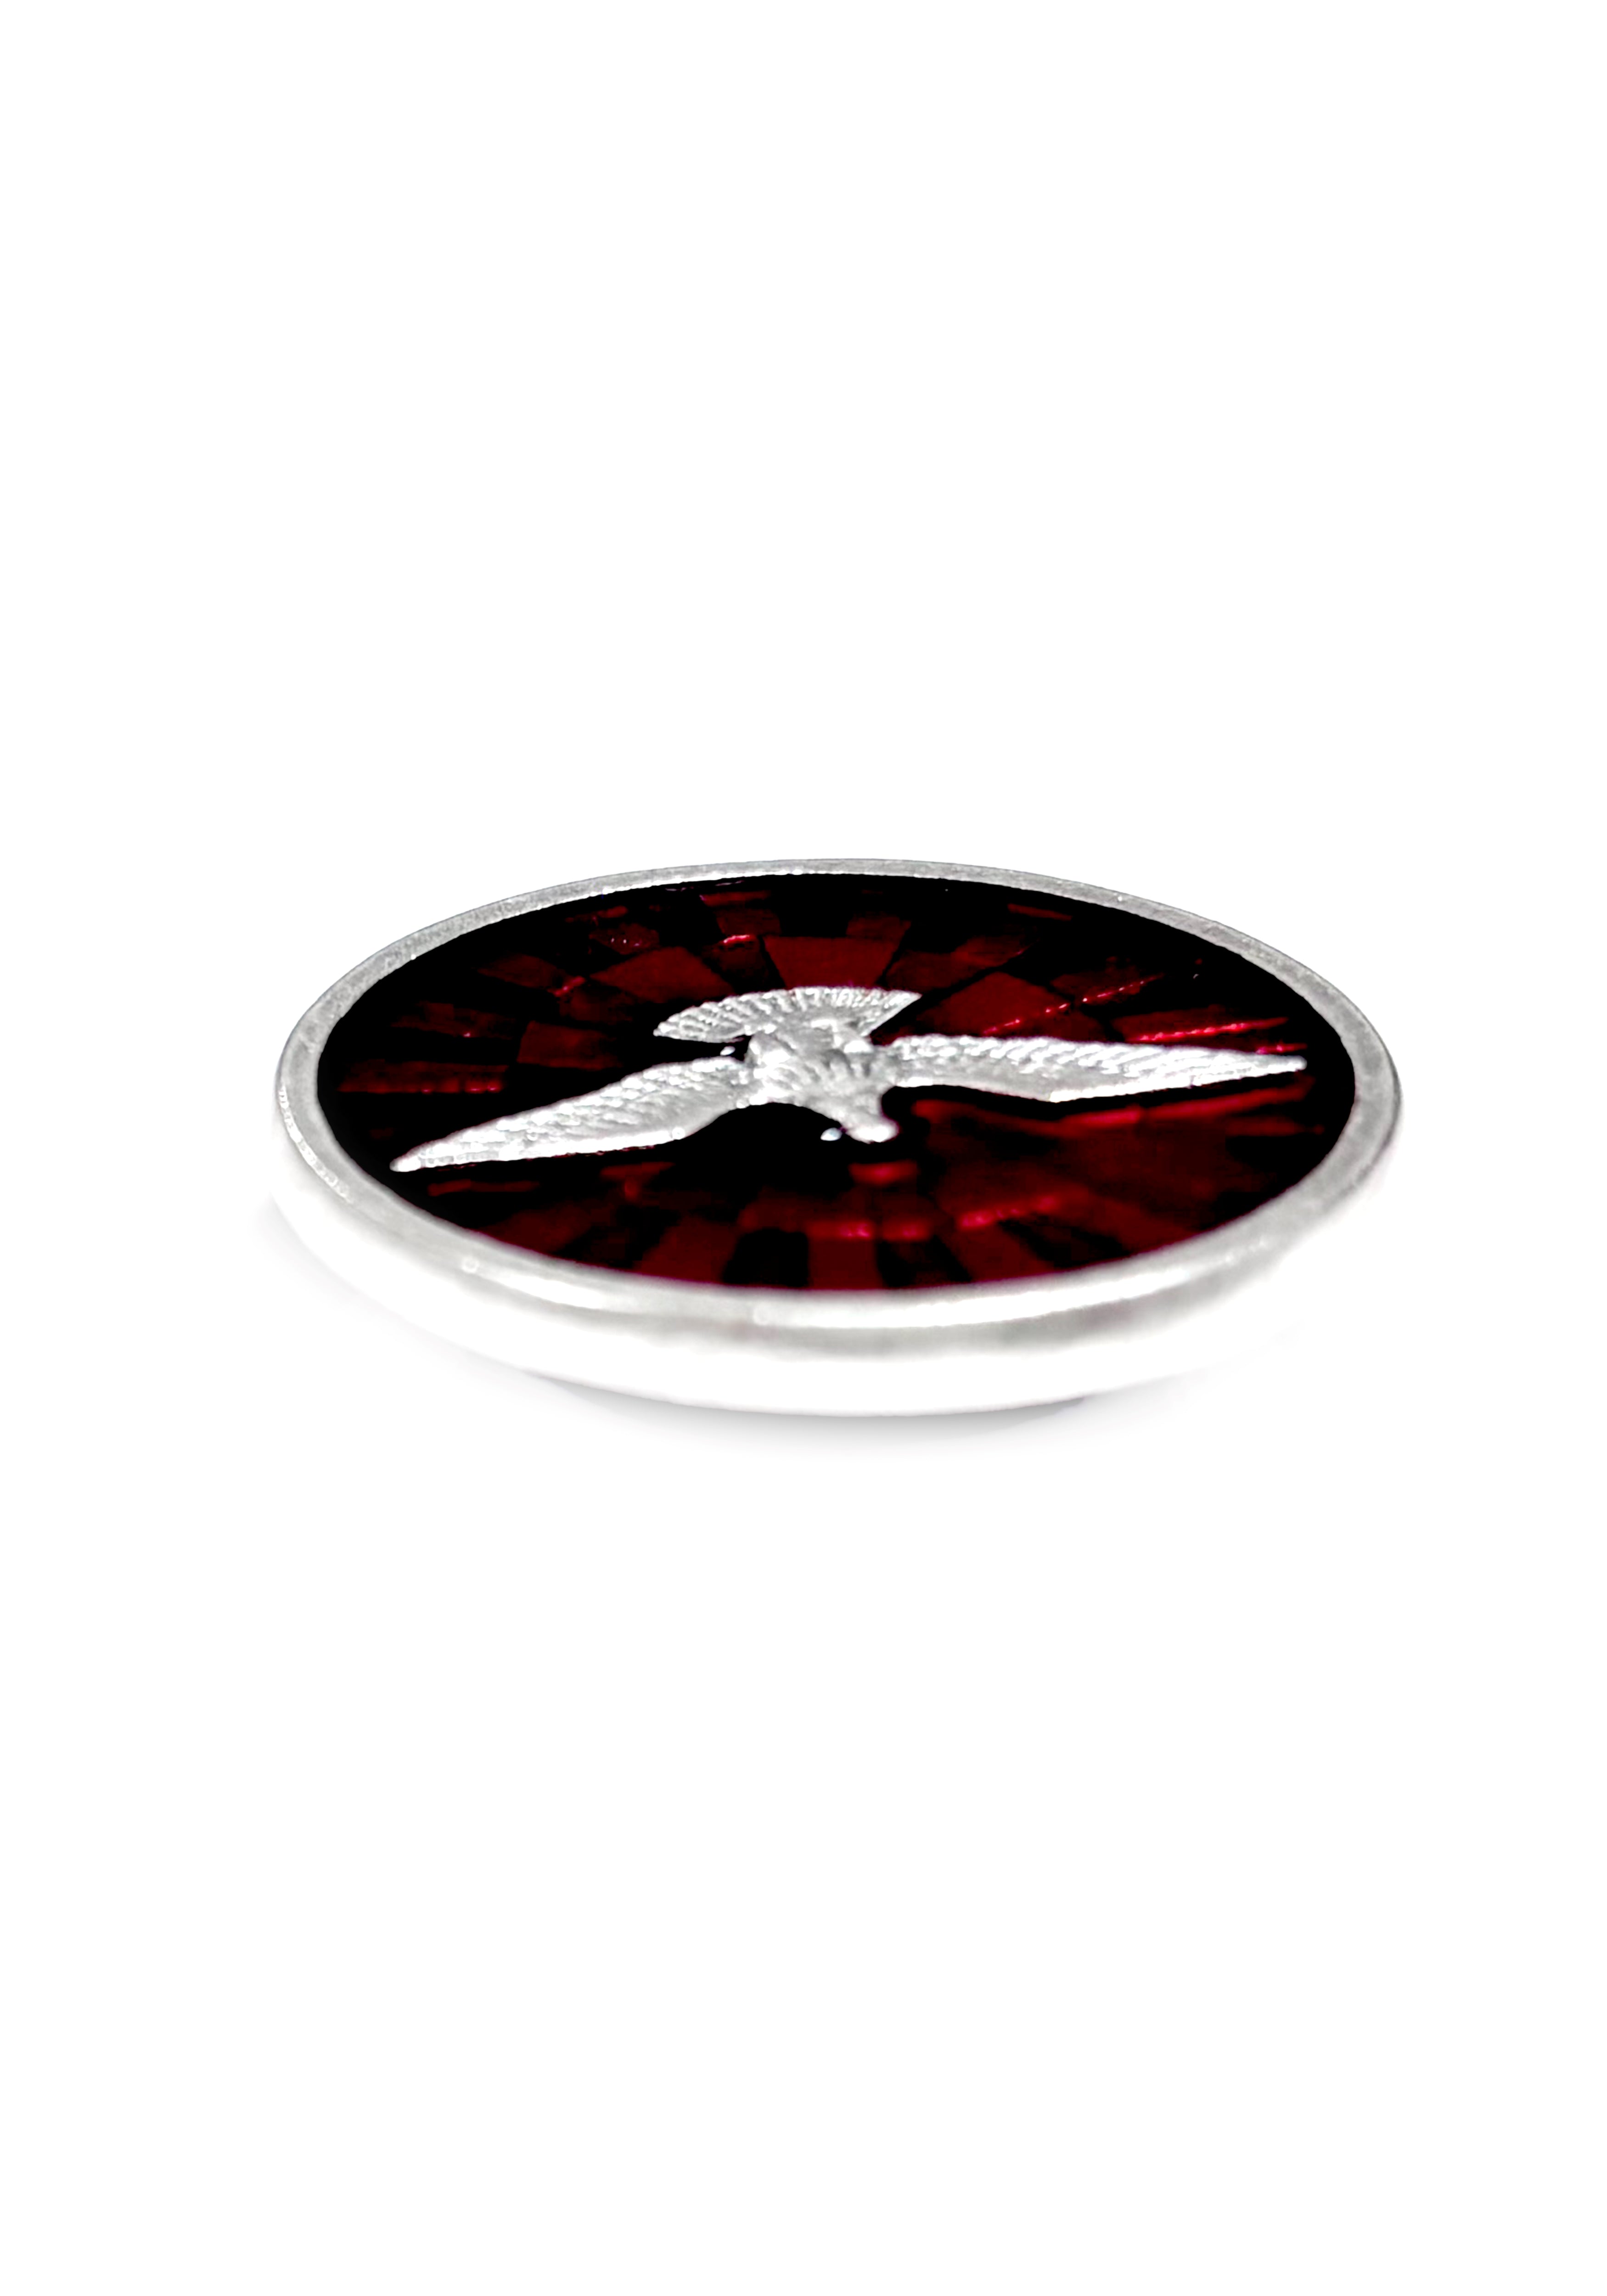 Holy Spirit red enamel round medal magnet